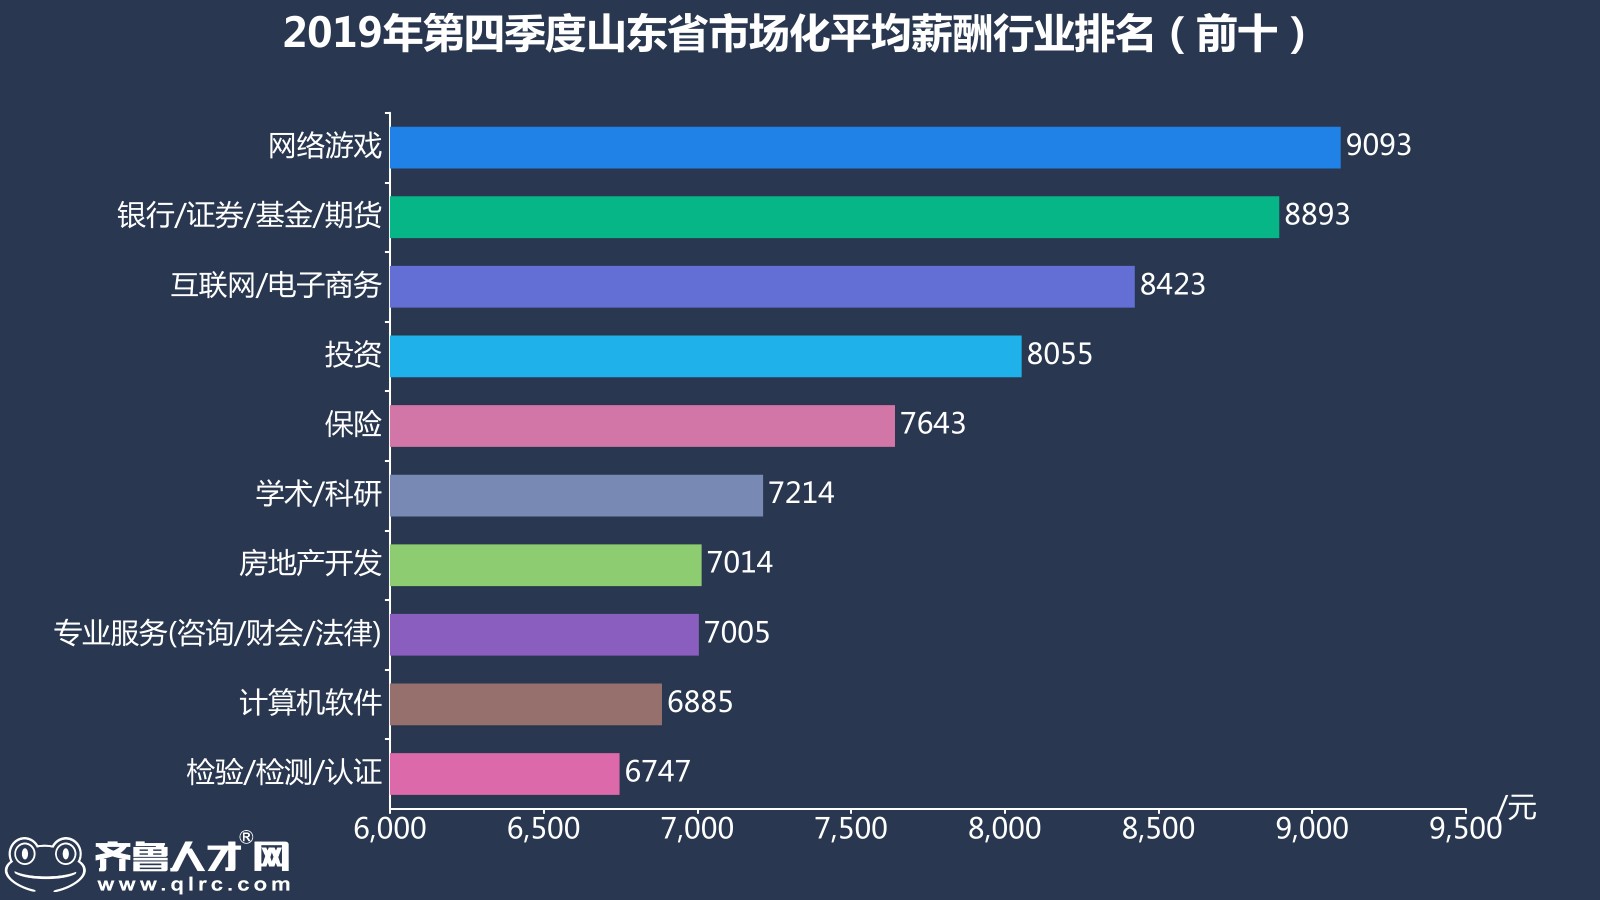 齐鲁人才网-2019年山东四季度薪酬数据图5.jpg